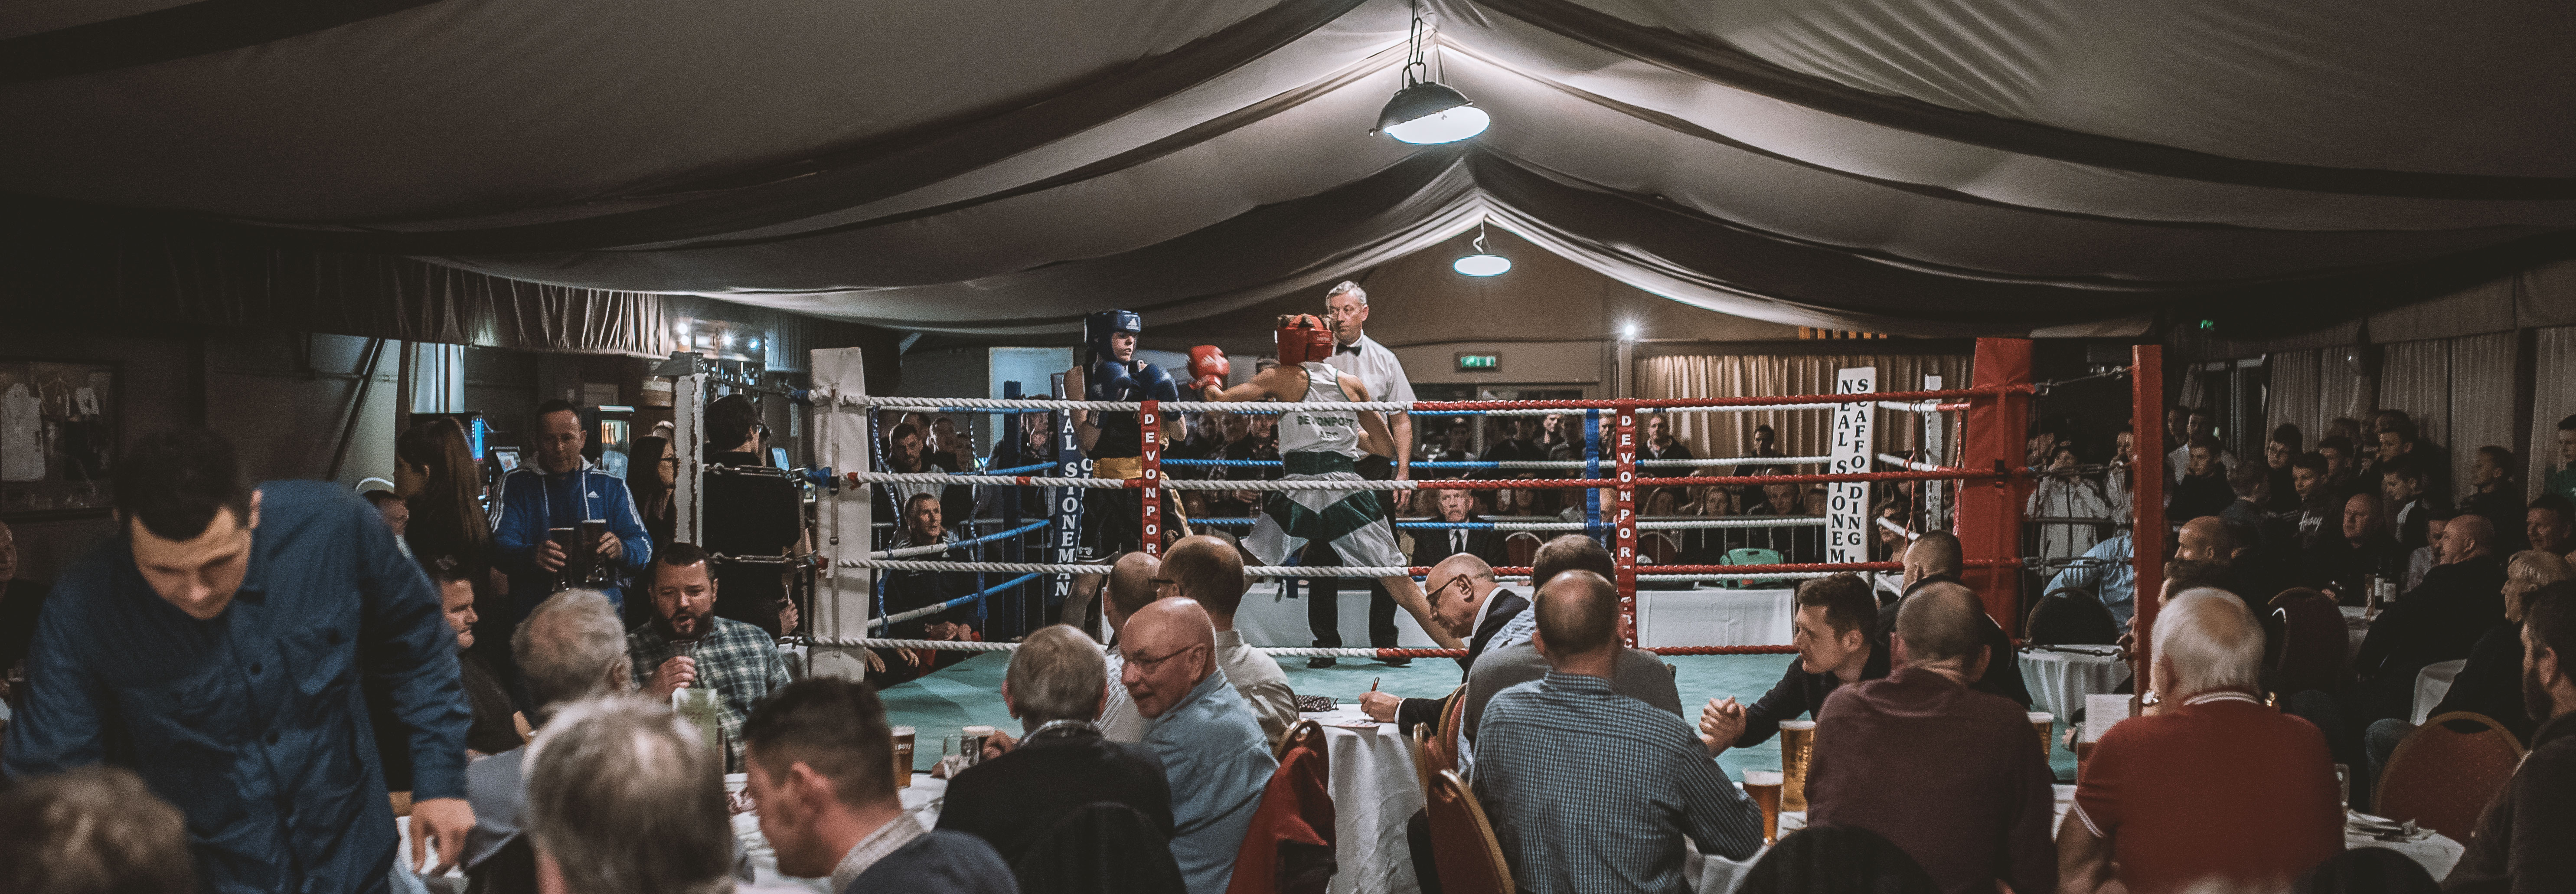 Devonport Amateur Boxing Club